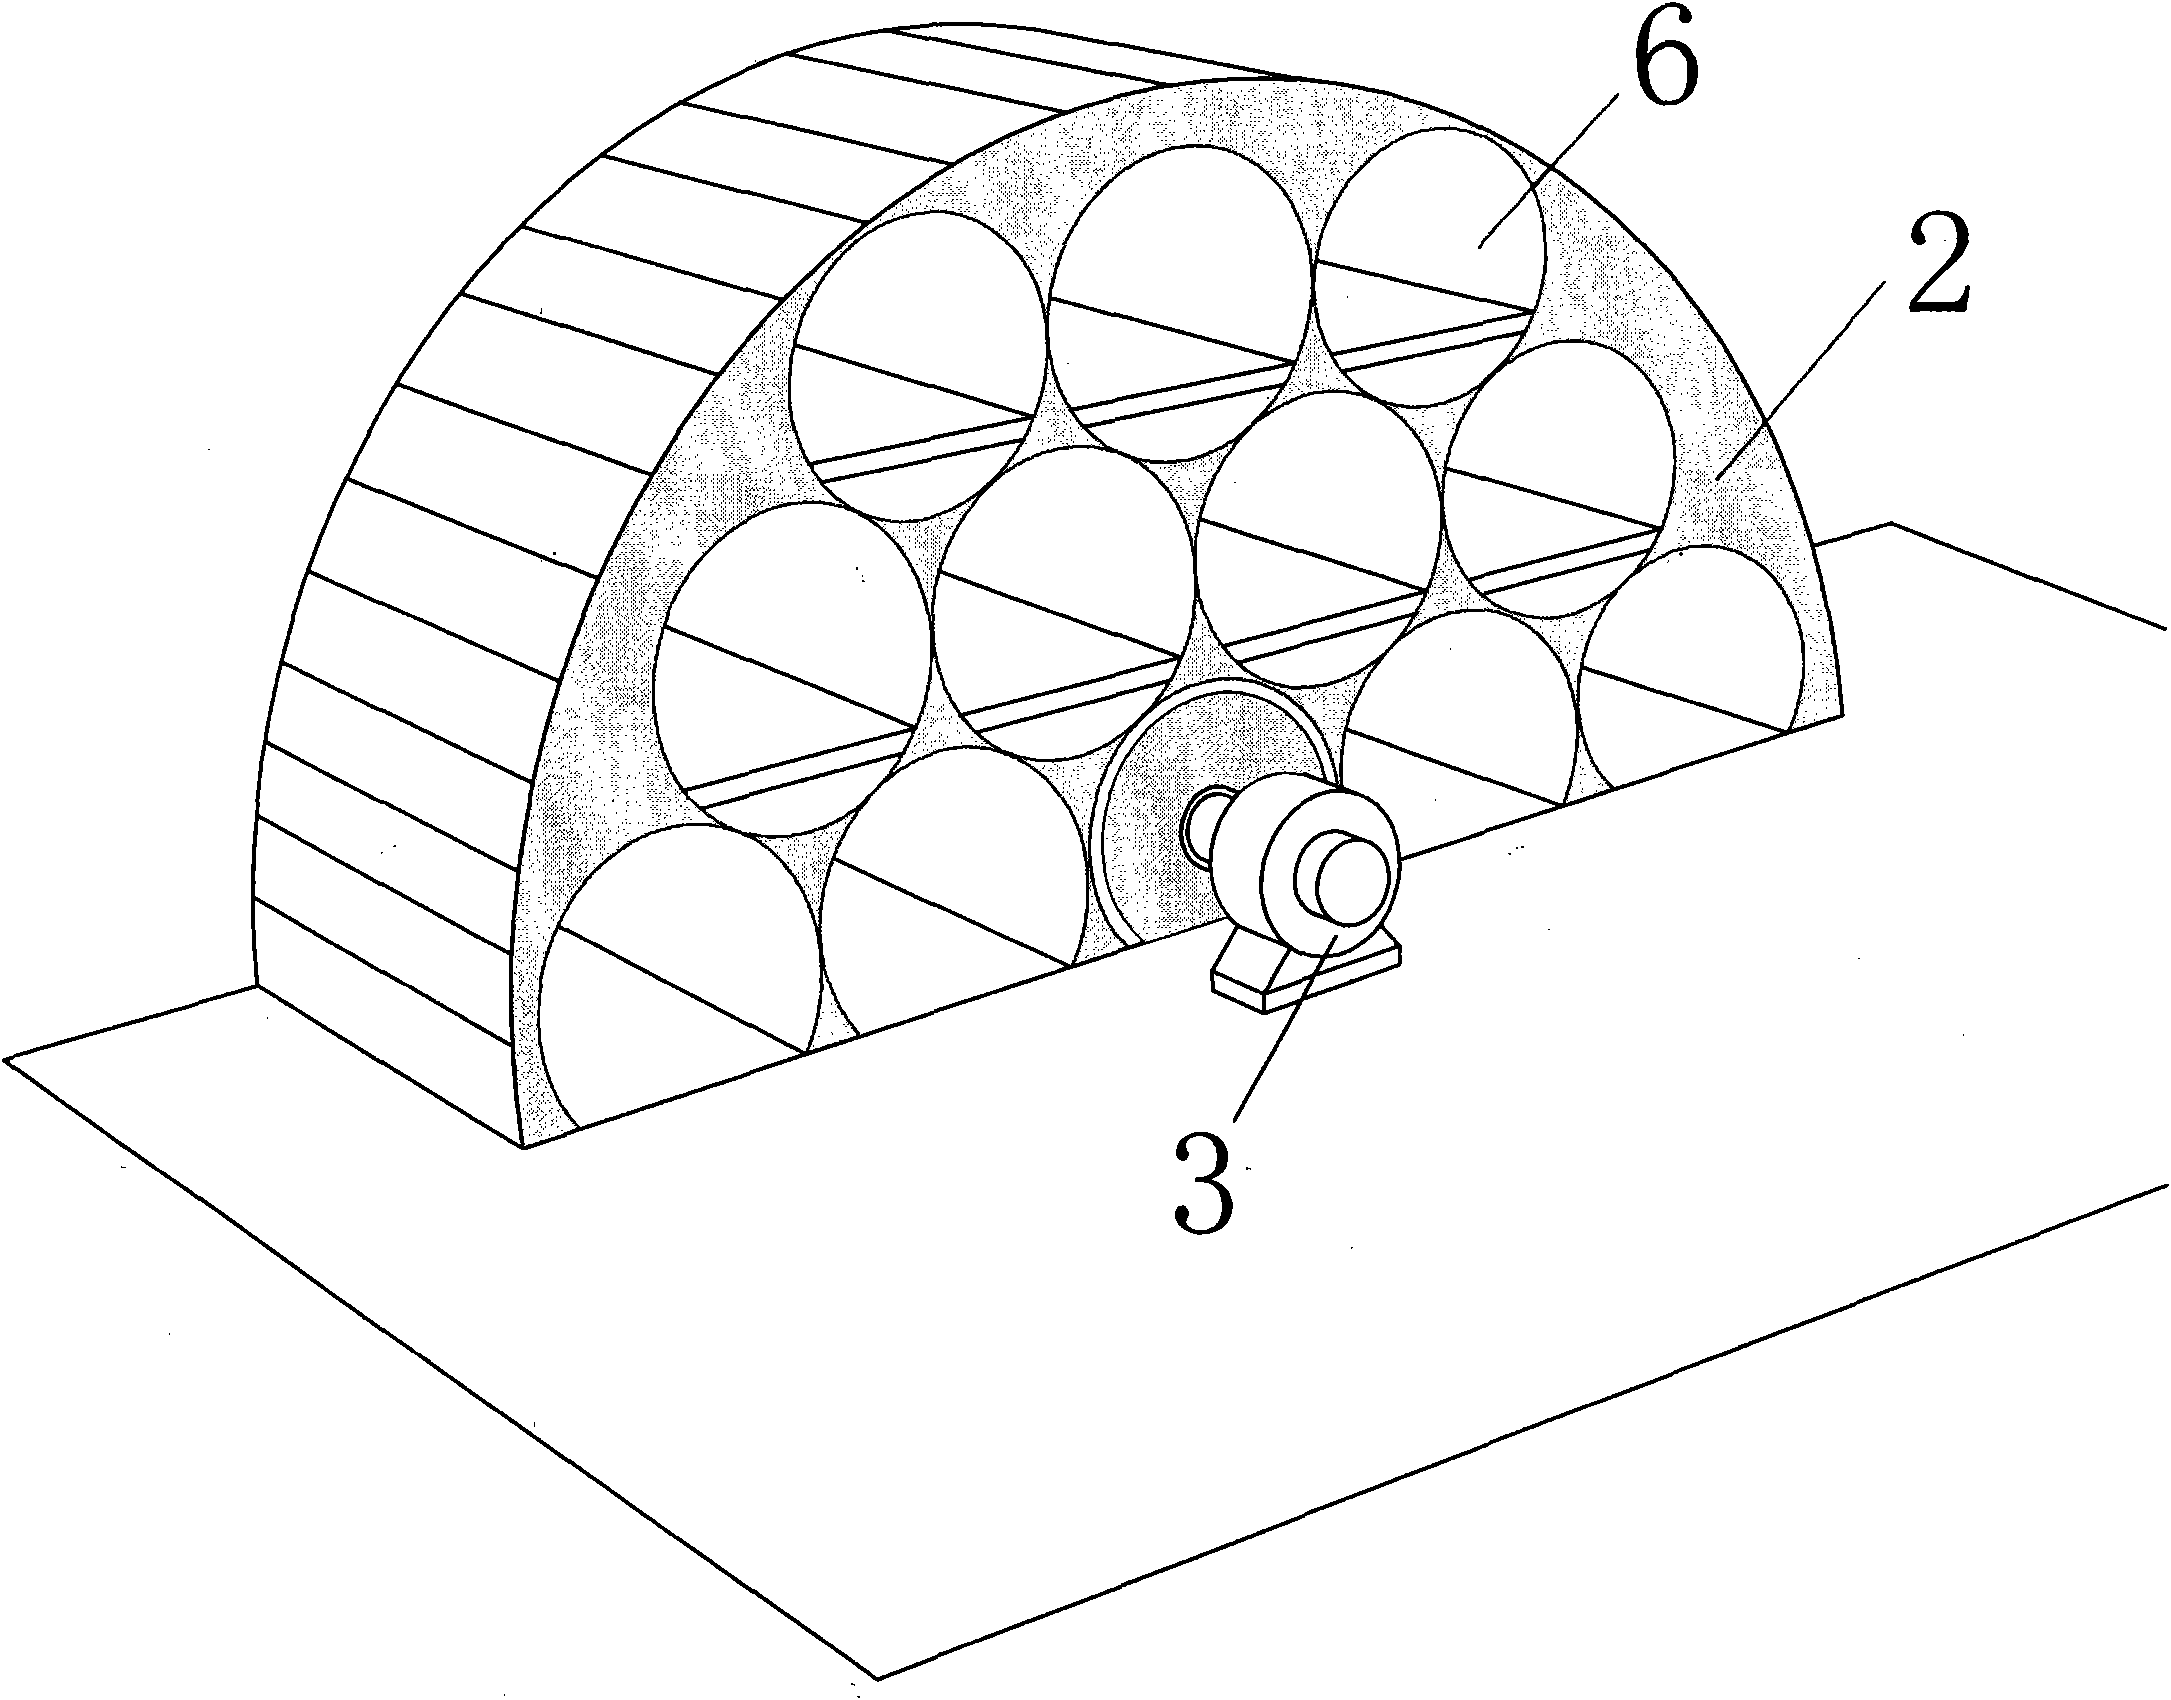 Honeycomb intensive rotary garage